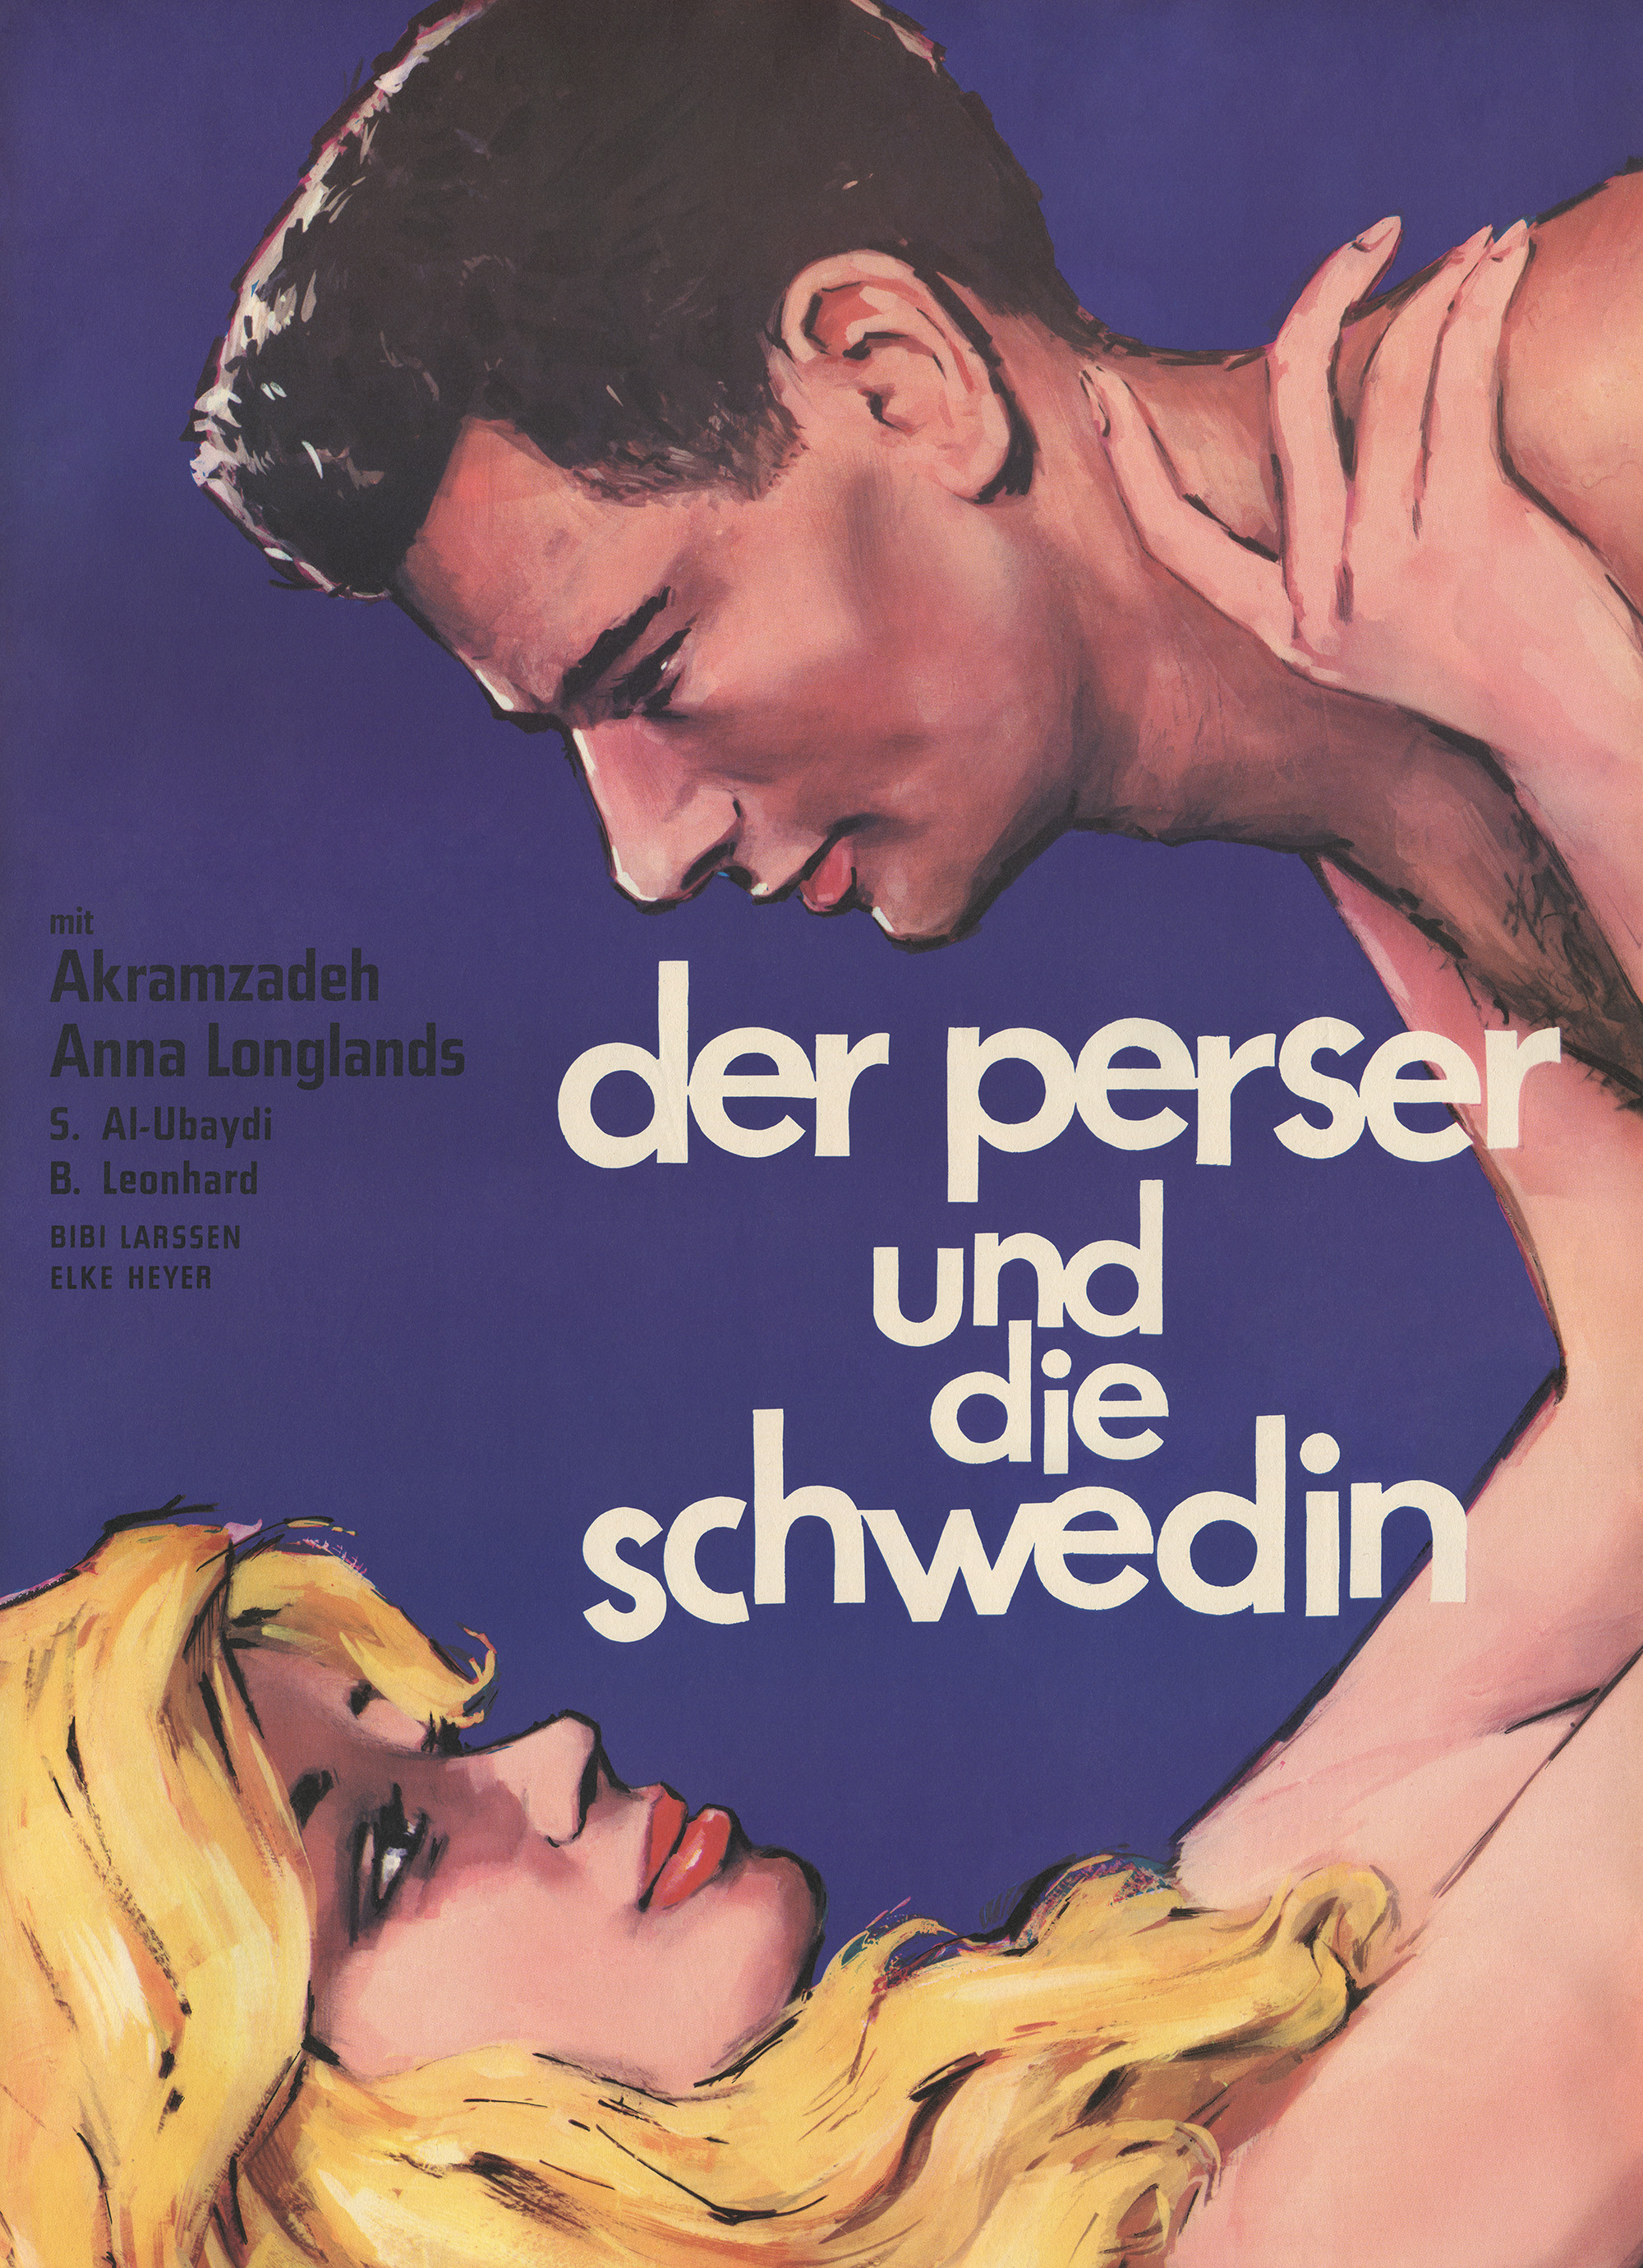 Утраченная молодость (1961) постер